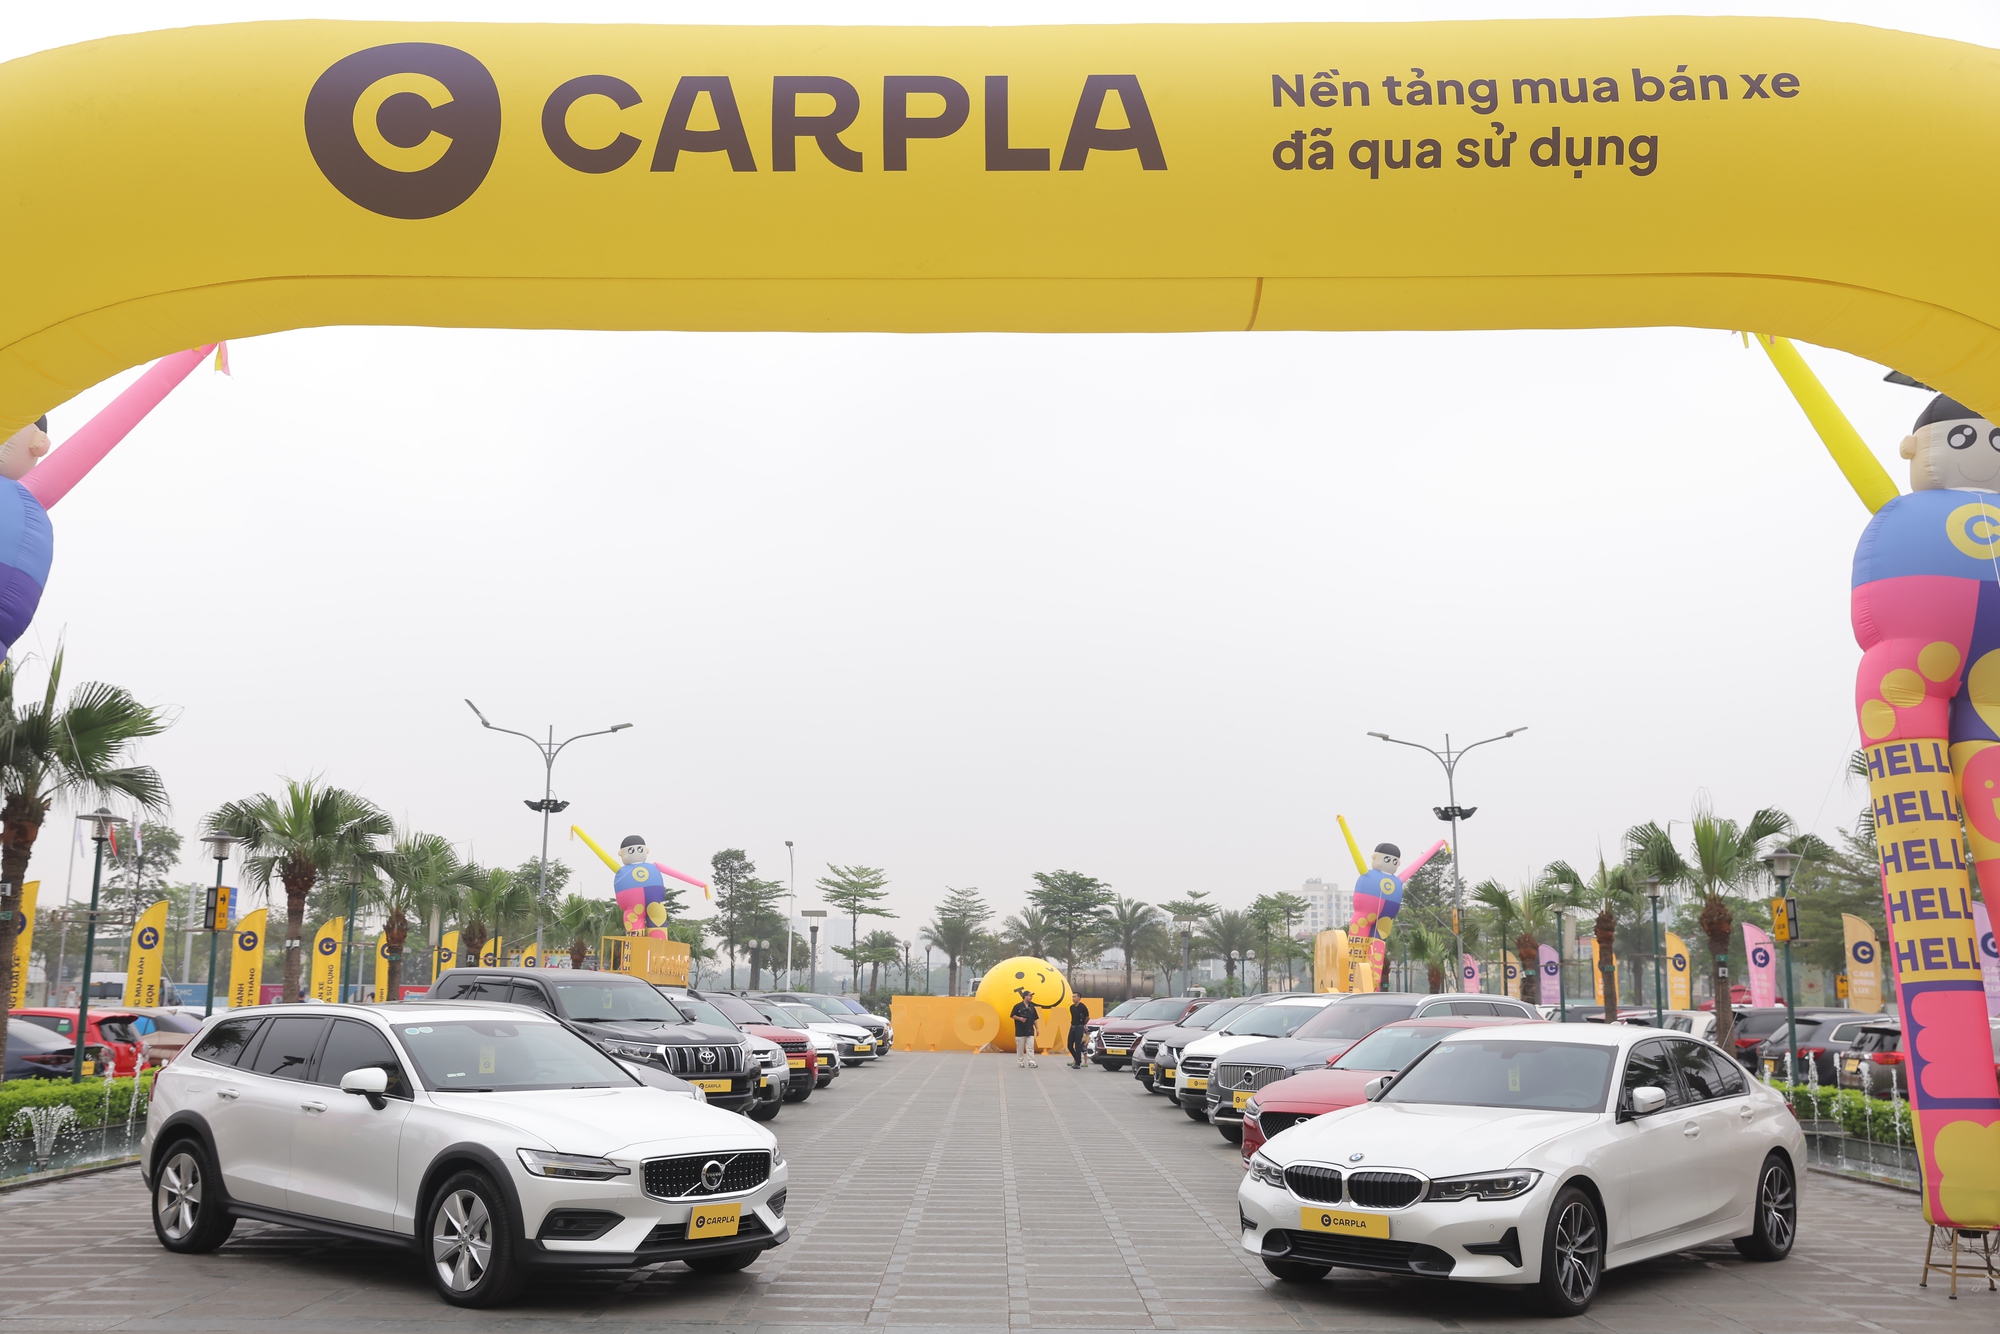 Nền tảng mua bán xe ô tô đã qua sử dụng lớn nhất Việt Nam khai trương Automall, kết hợp triển lãm xe cổ đầu tiên tại Hà Nội - Ảnh 3.